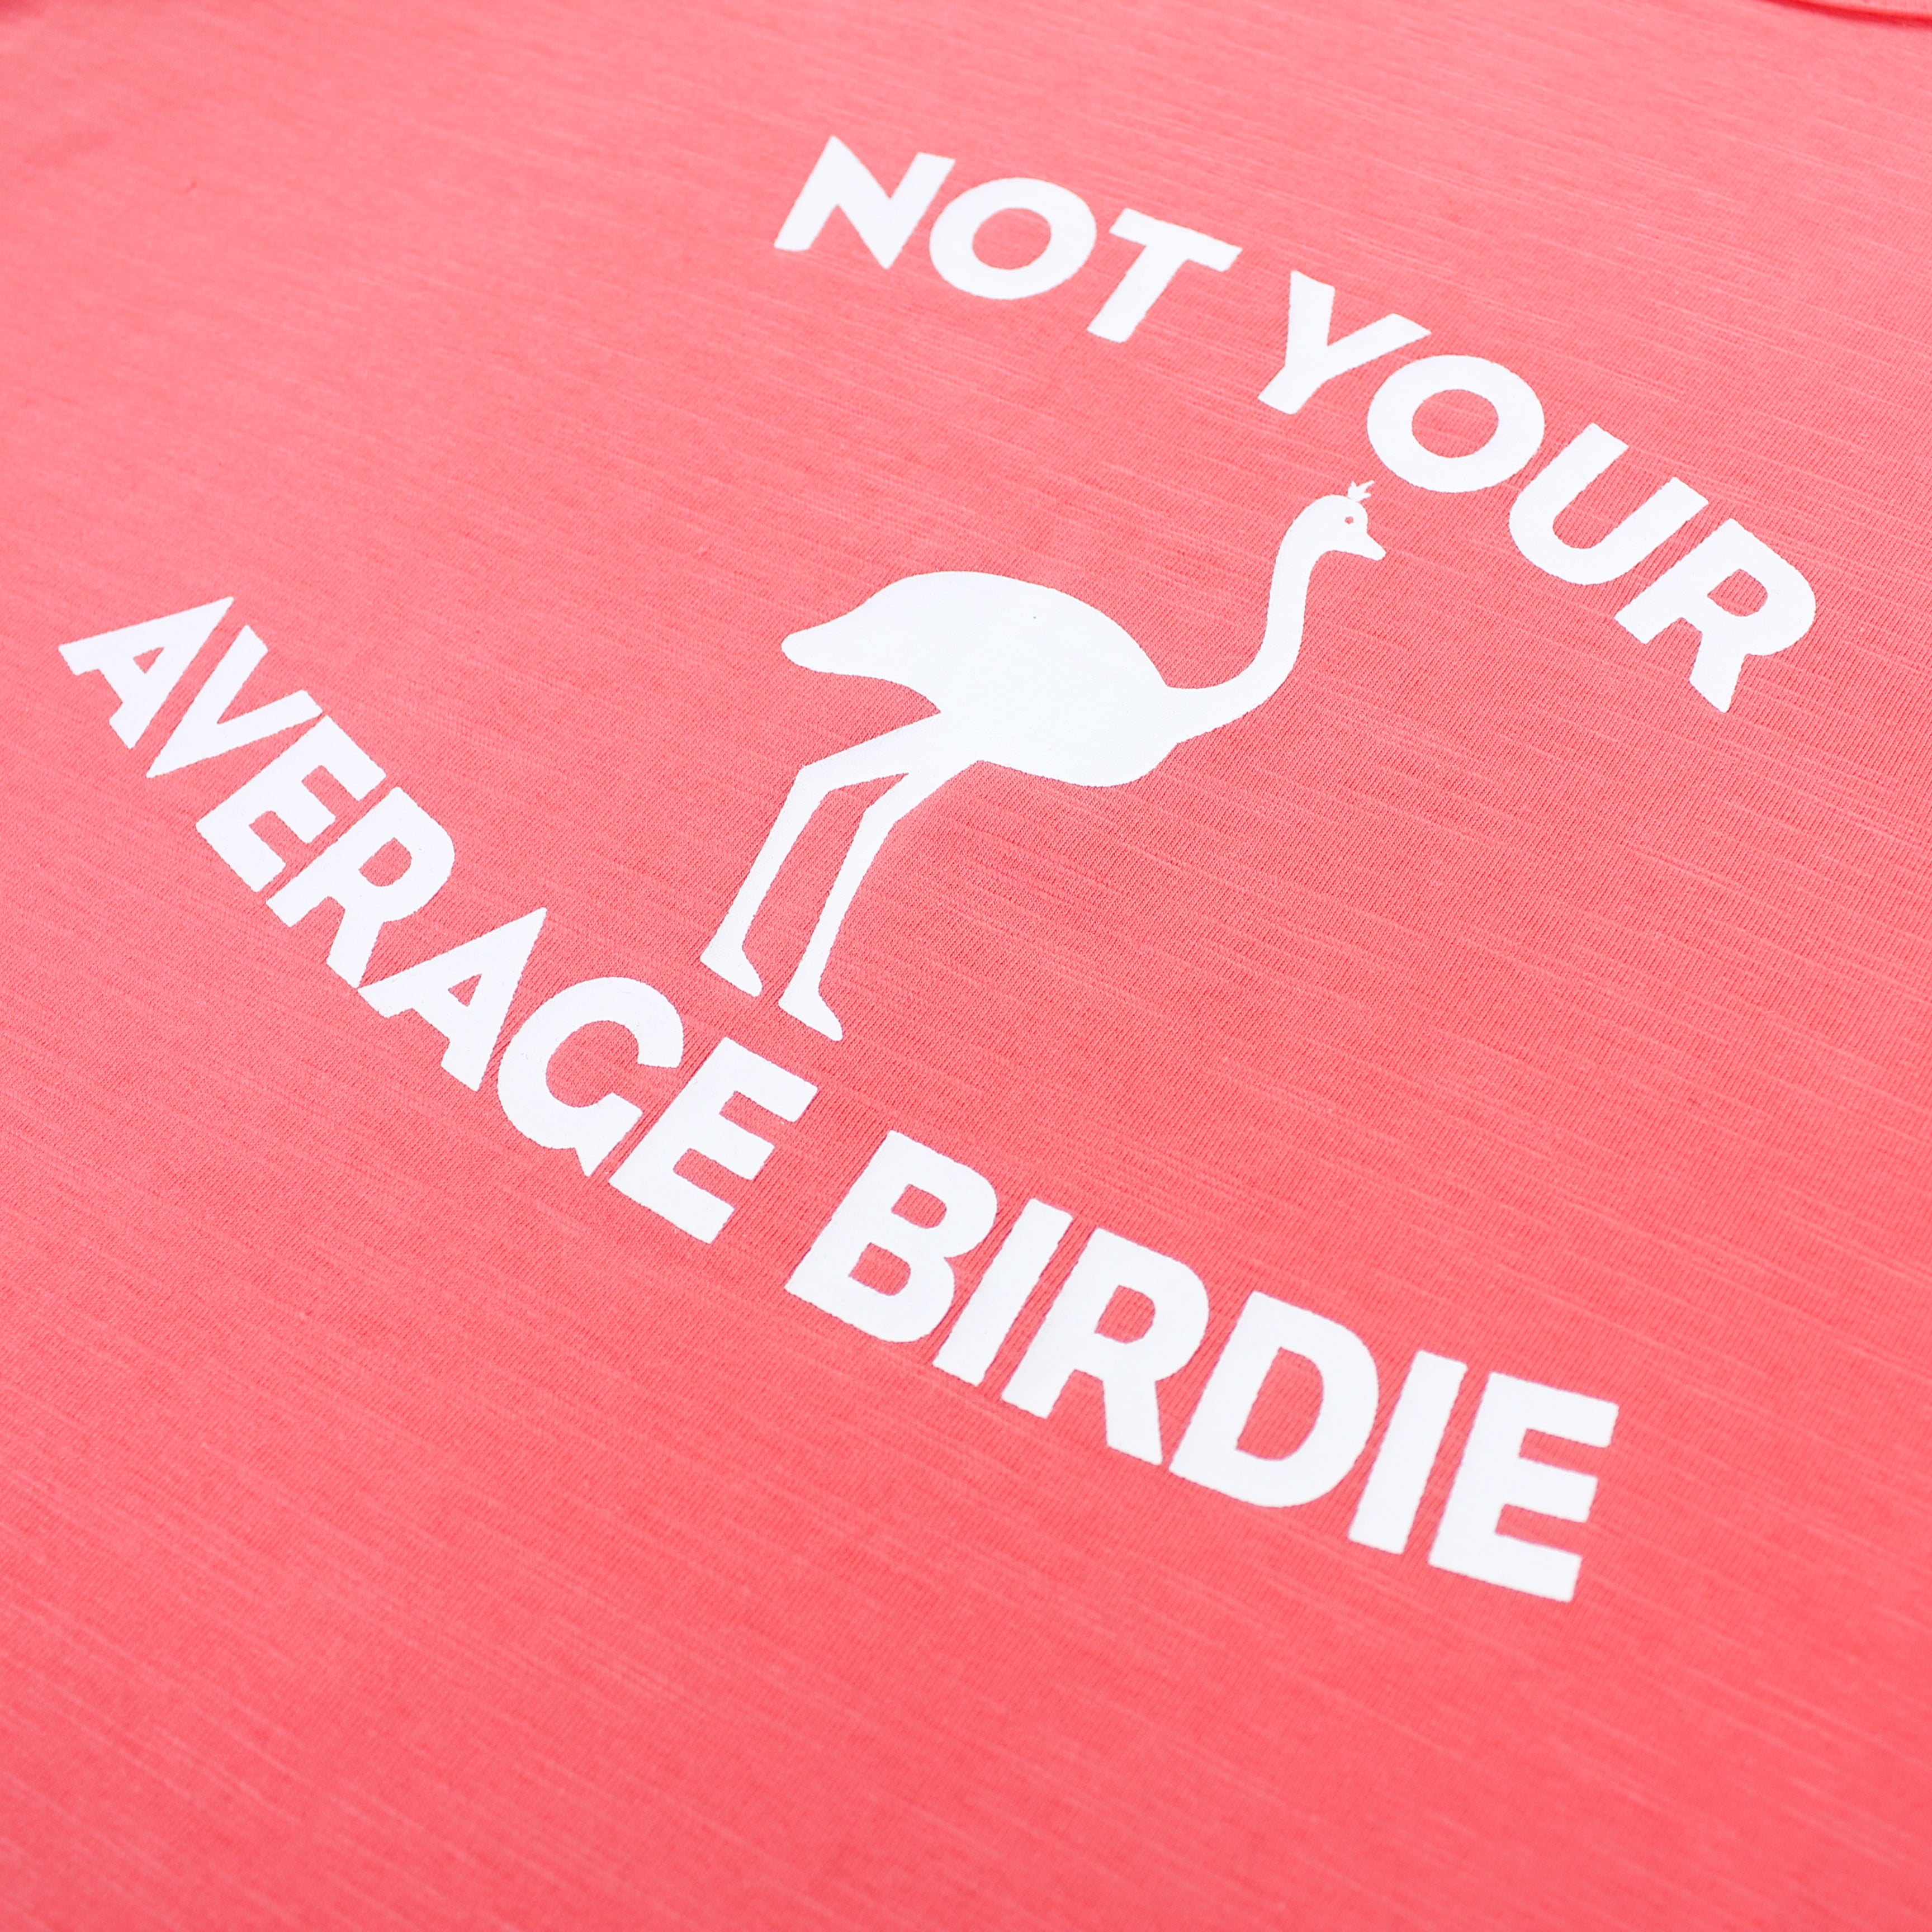 Not Your Average Birdie - Salmon